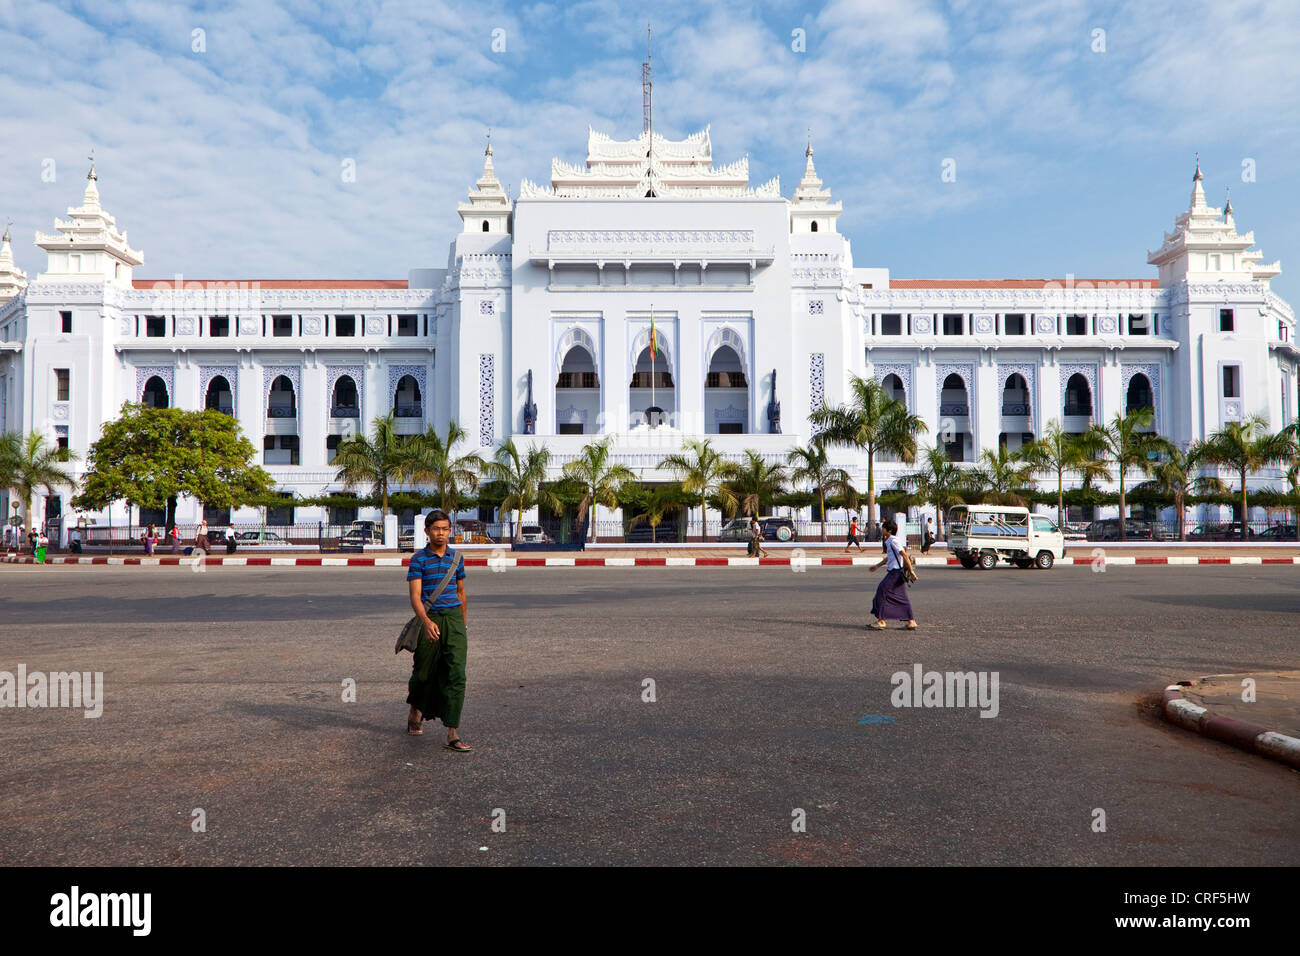 Myanmar, Burma, Yangon. City Hall. Stock Photo